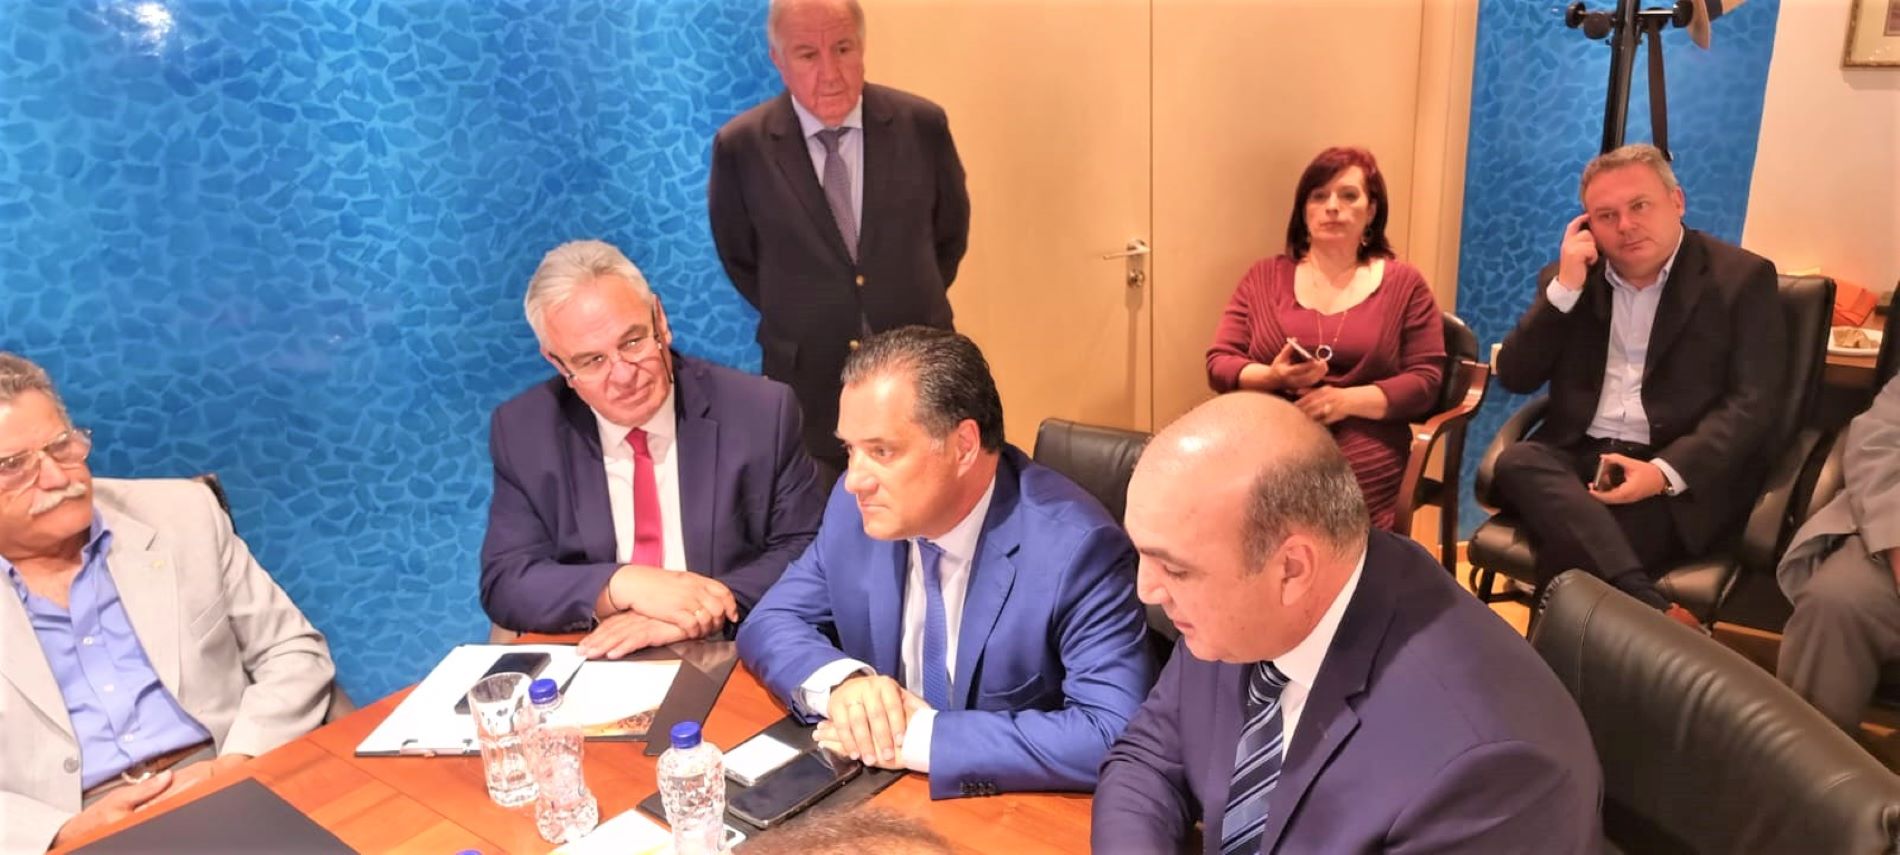 Ο υπουργός Ανάπτυξης Άδωνις Γεωργιάδης στην υπογραφή συμφωνίας μεταξύ ΚΕΕΕ και GEA για τα συγγενικά δικαιώματα © ΥΠΑΝ